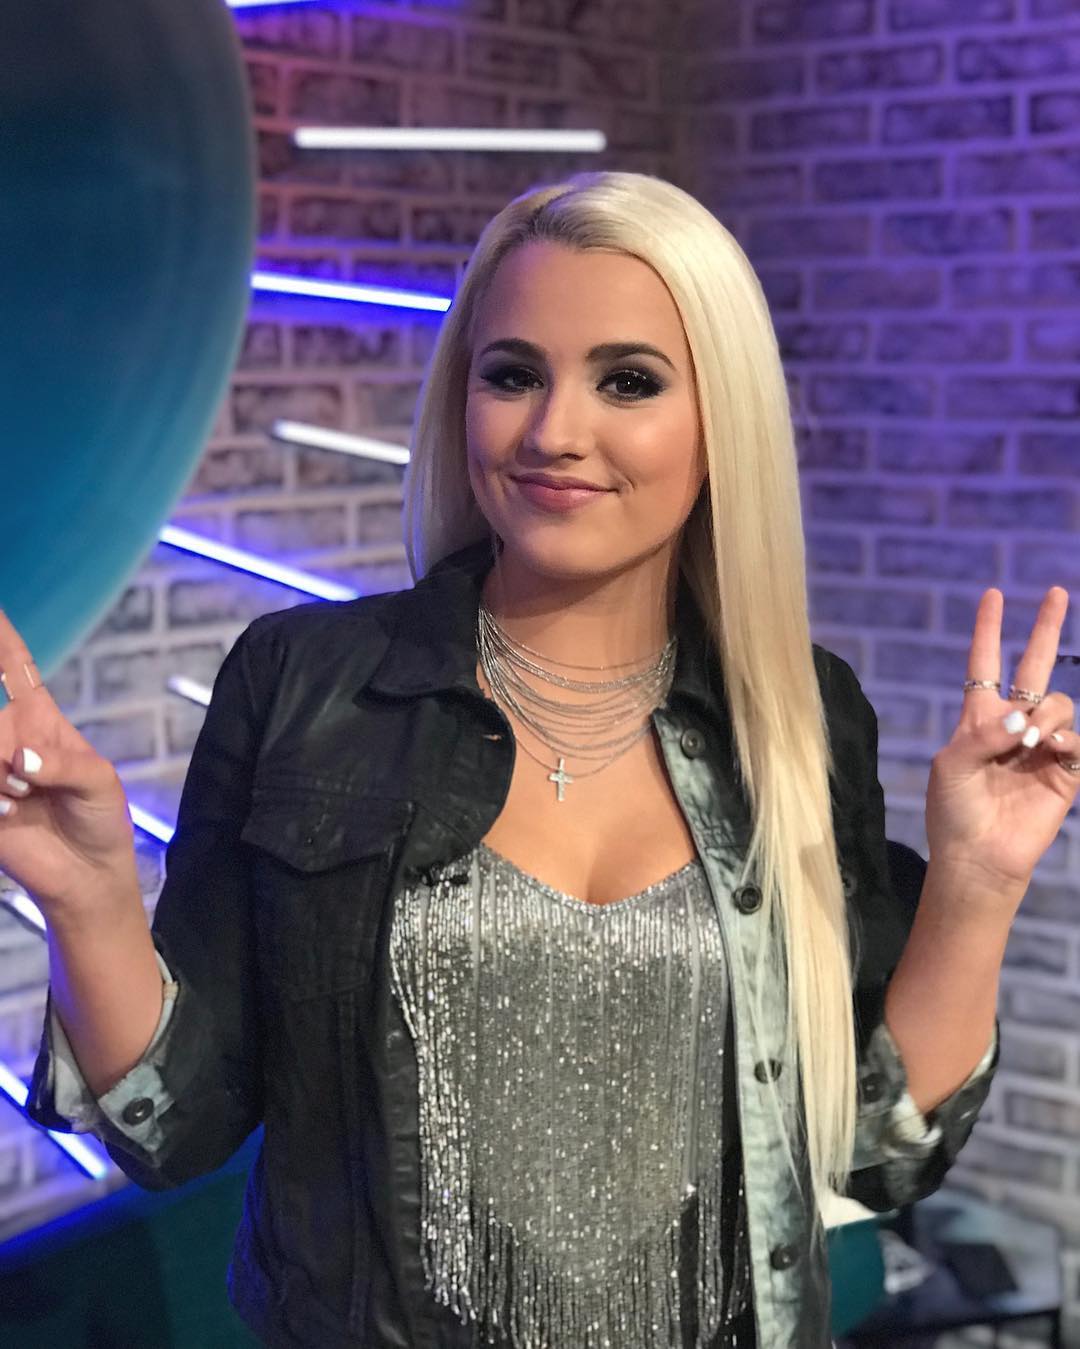 Gabby Barrett backstage at American Idol on May 13, 2018.
Photo credit: American Idol
